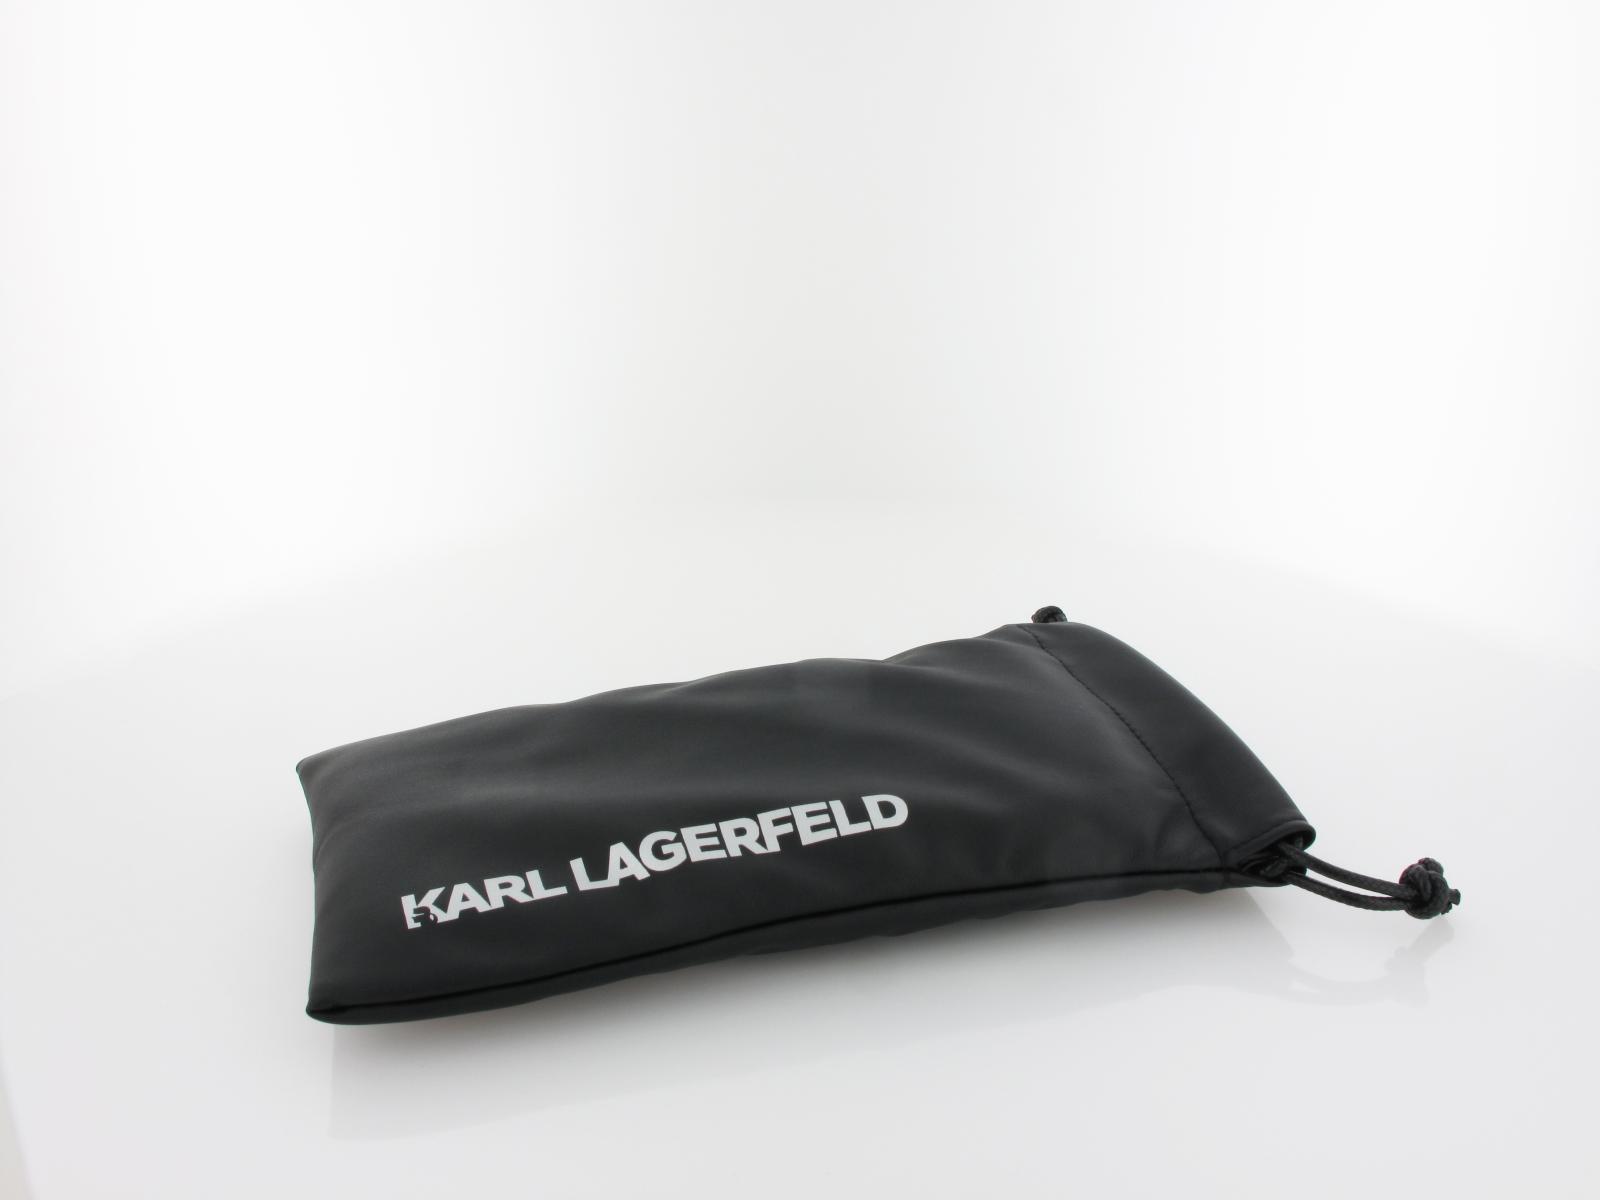 Karl Lagerfeld | KL338 712 56 | light gold semimatte